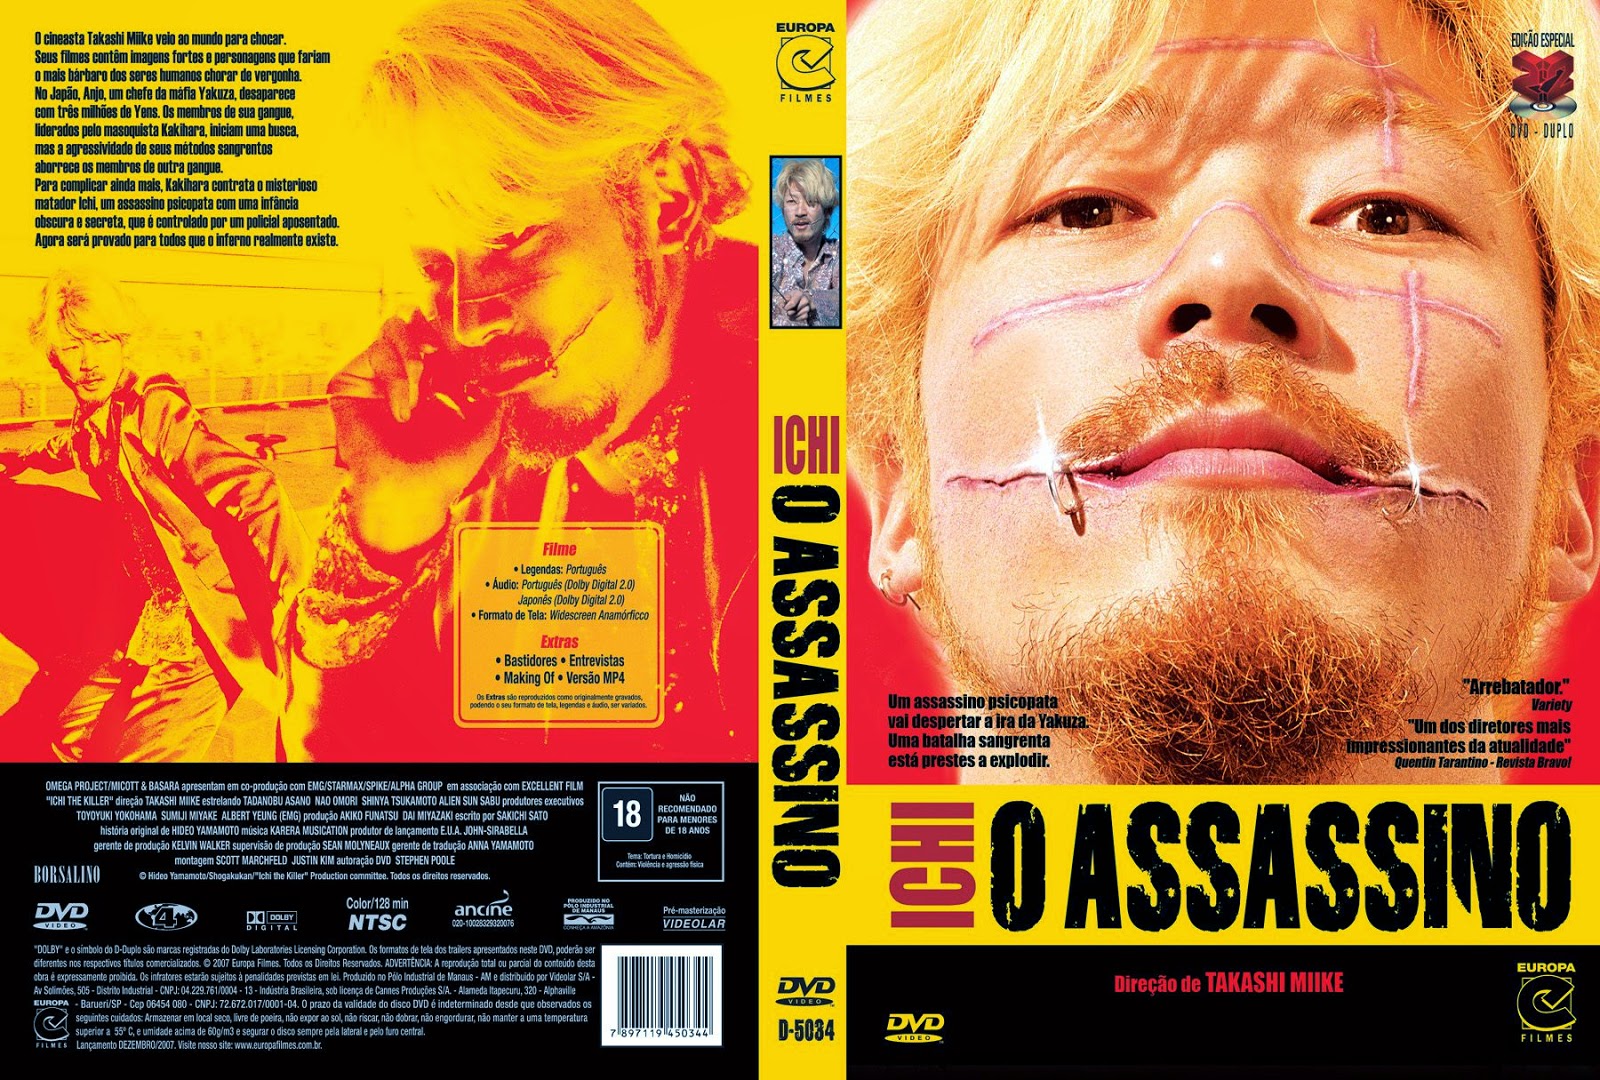 Capa DVD Ichi O Assassino